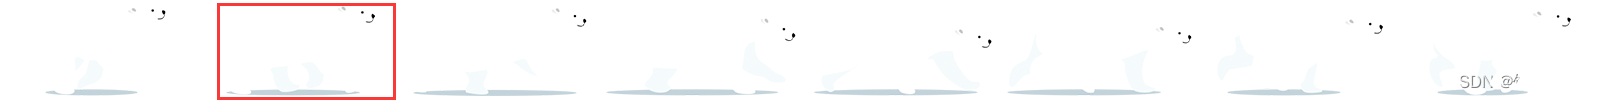 【css 动画】css实现奔跑的北极熊